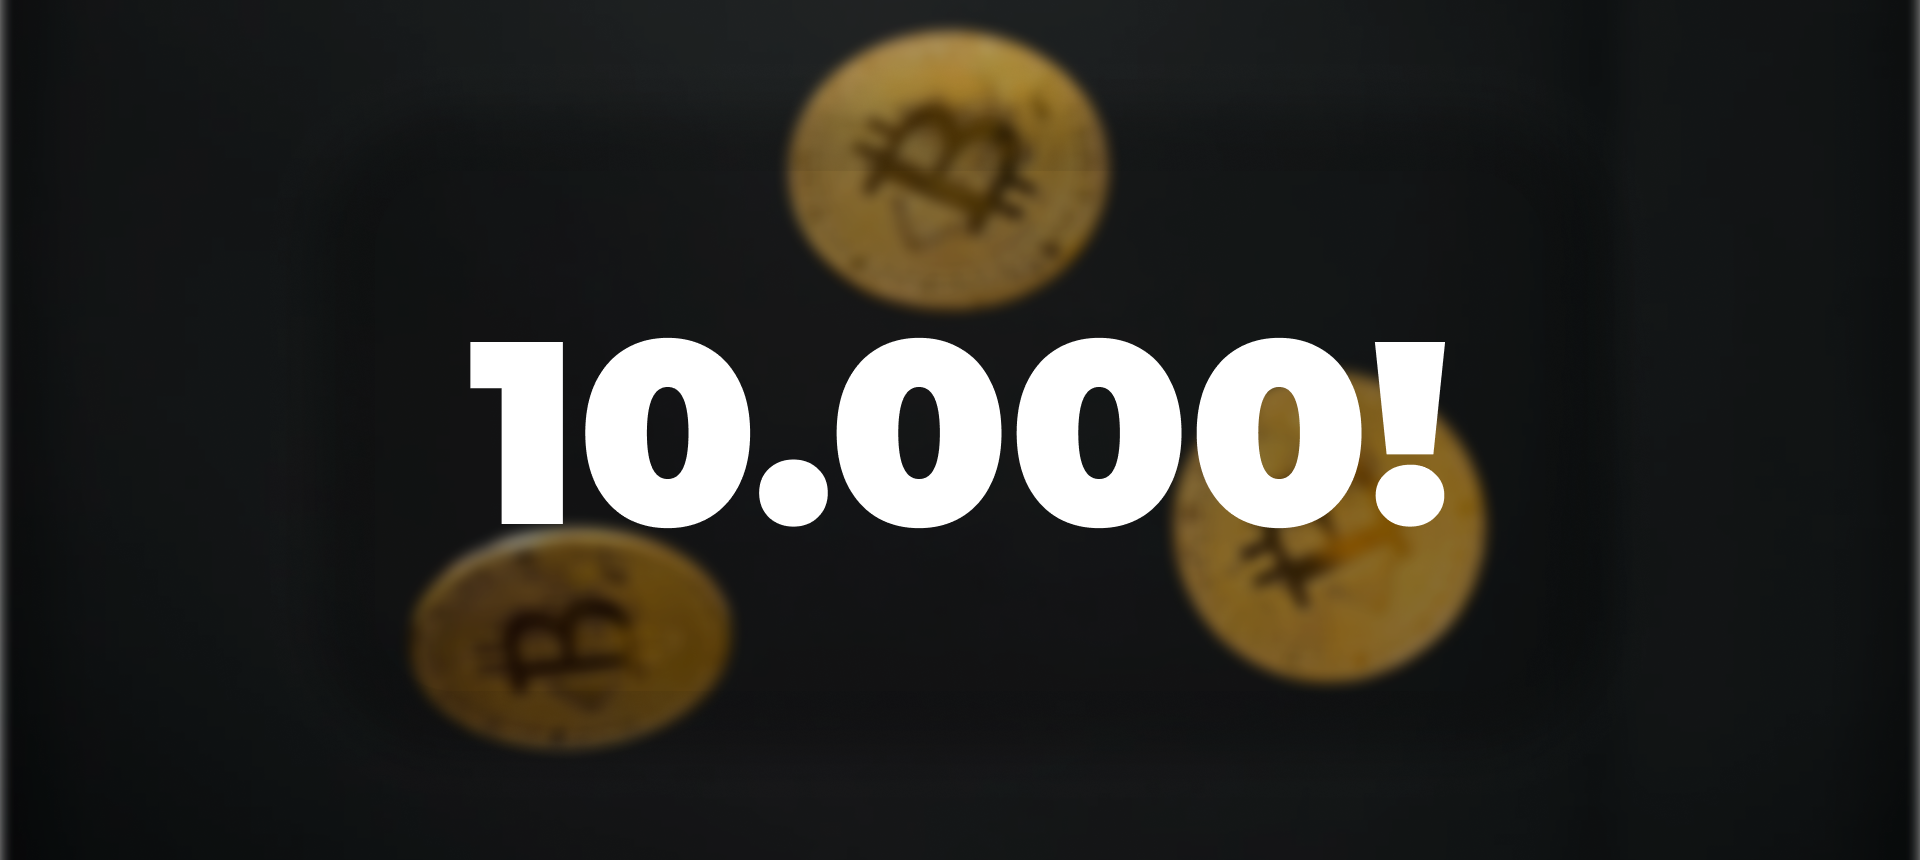 Bitcoin hjá Begga Ólafs og 10.000 viðskiptavinir